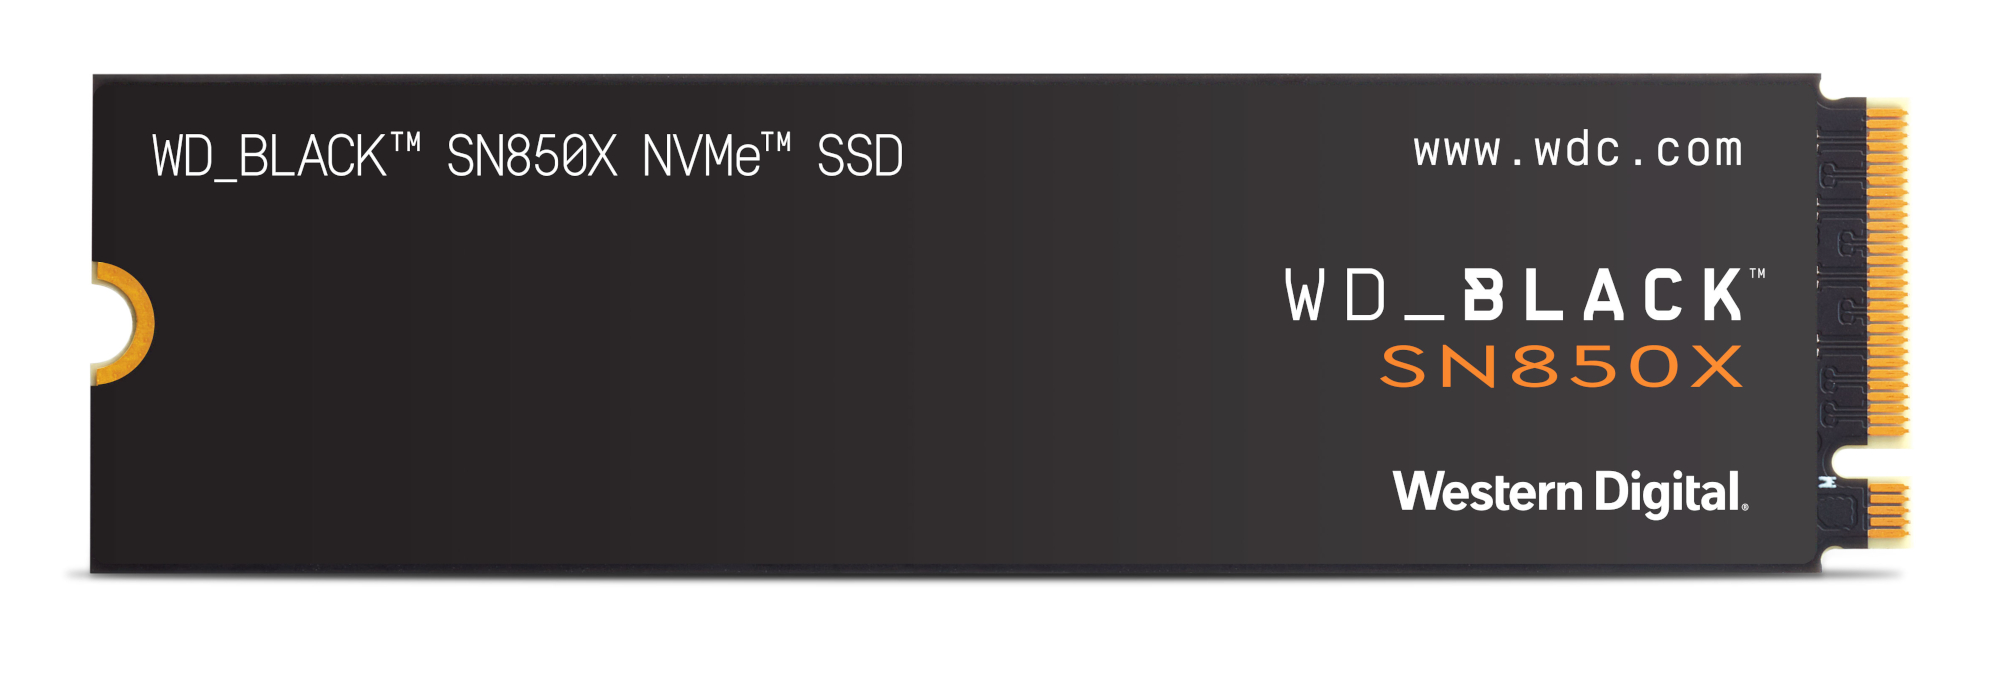 WD Black SN850X - Meilleur SSD PCIe 4.0